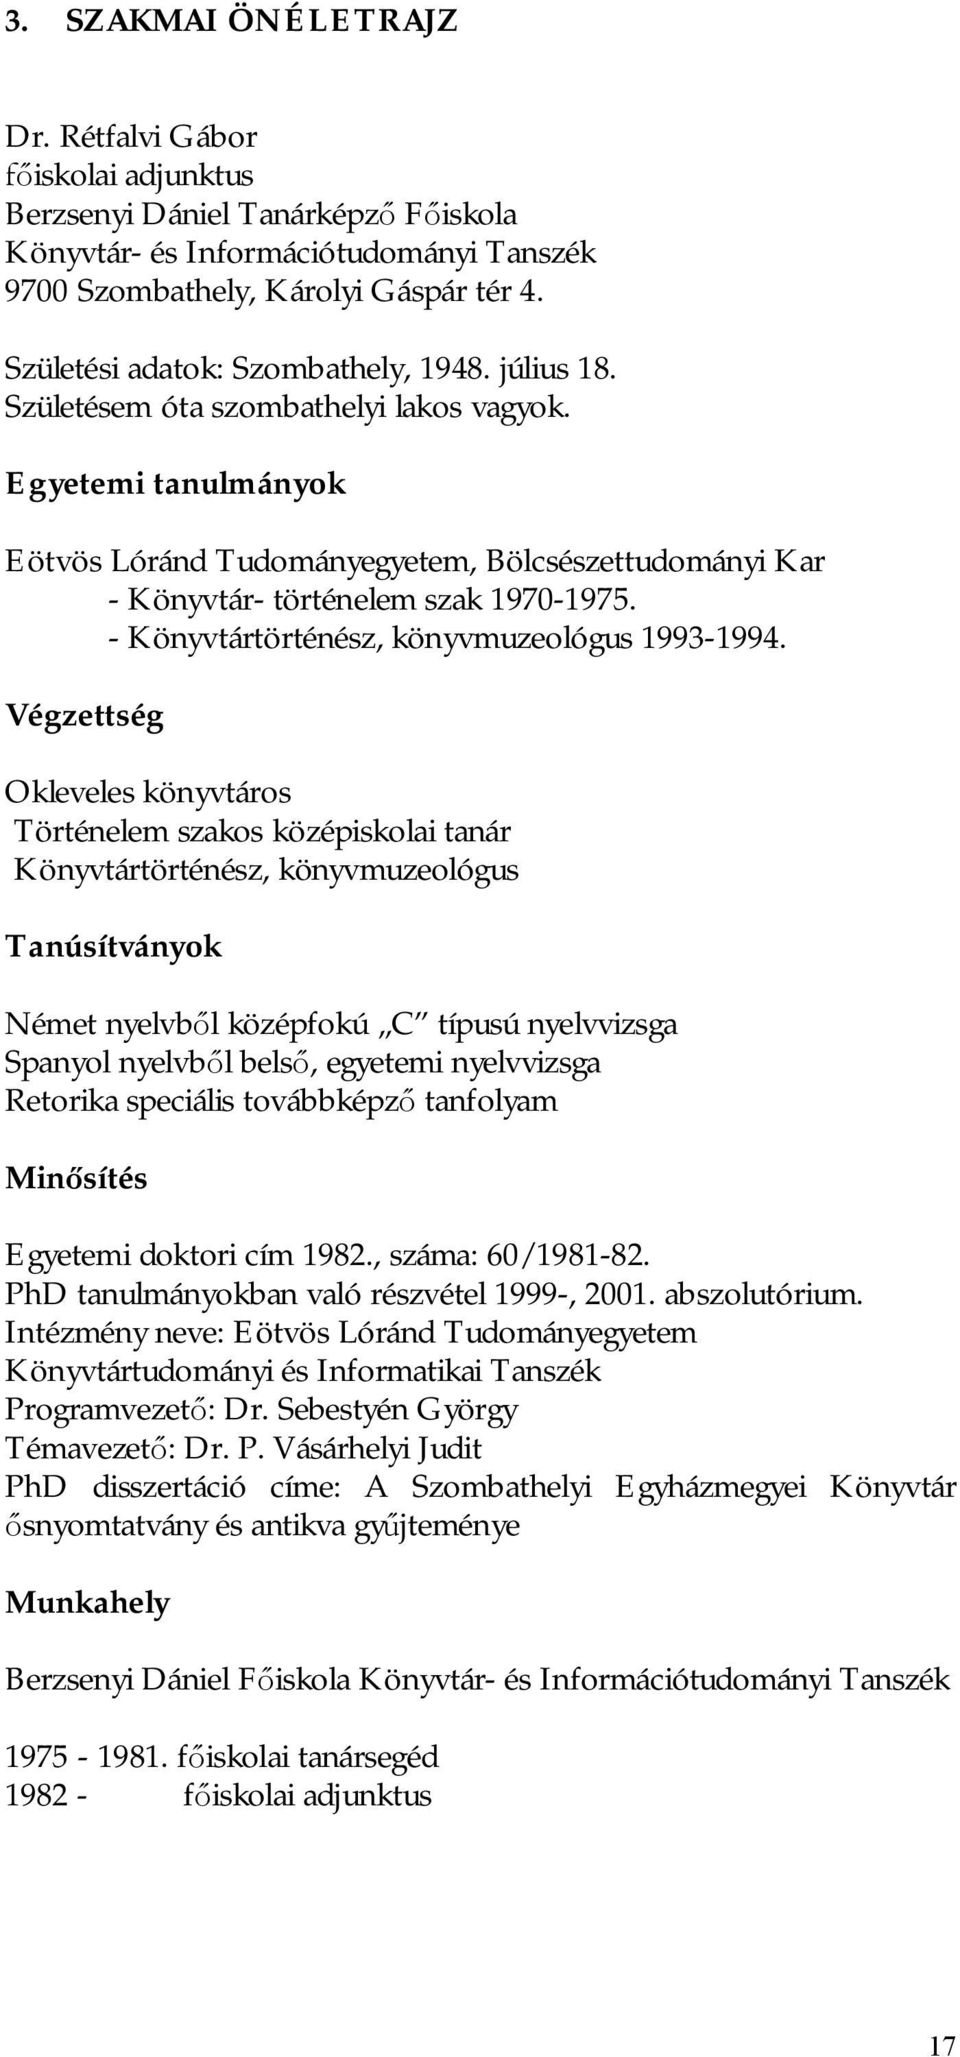 Egyetemi tanulmányok Eötvös Lóránd Tudományegyetem, Bölcsészettudományi Kar - Könyvtár- történelem szak 1970-1975. - Könyvtártörténész, könyvmuzeológus 1993-1994.